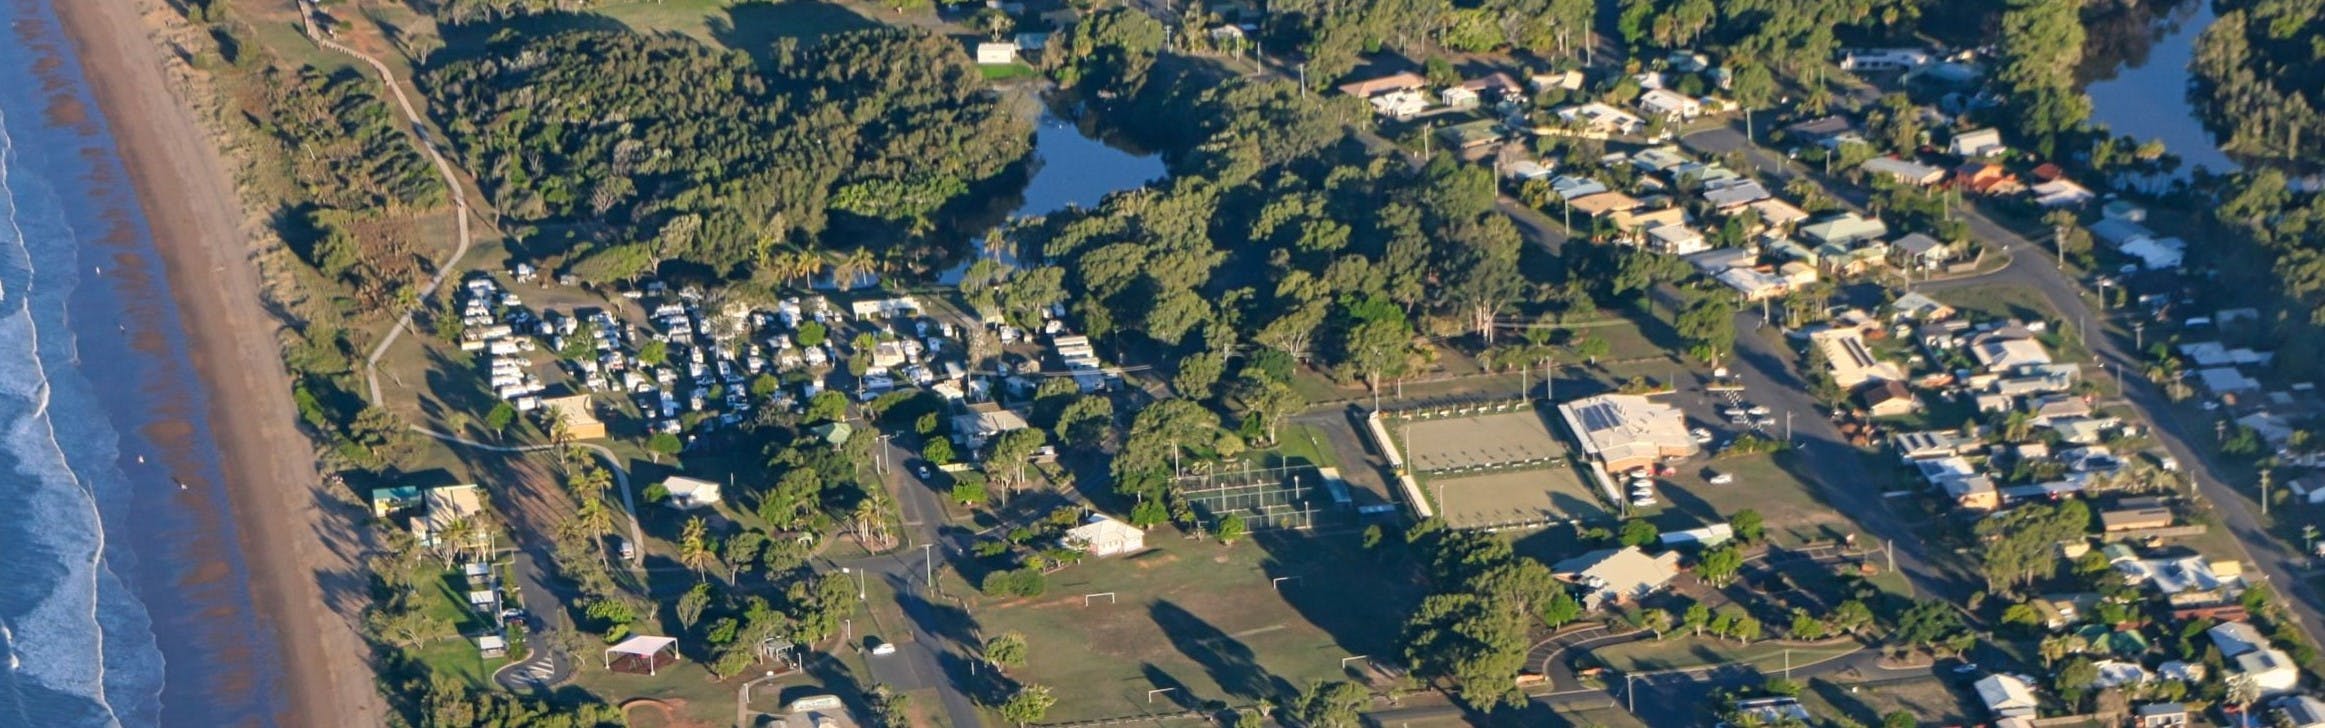 Moore Park Beach Aerial View